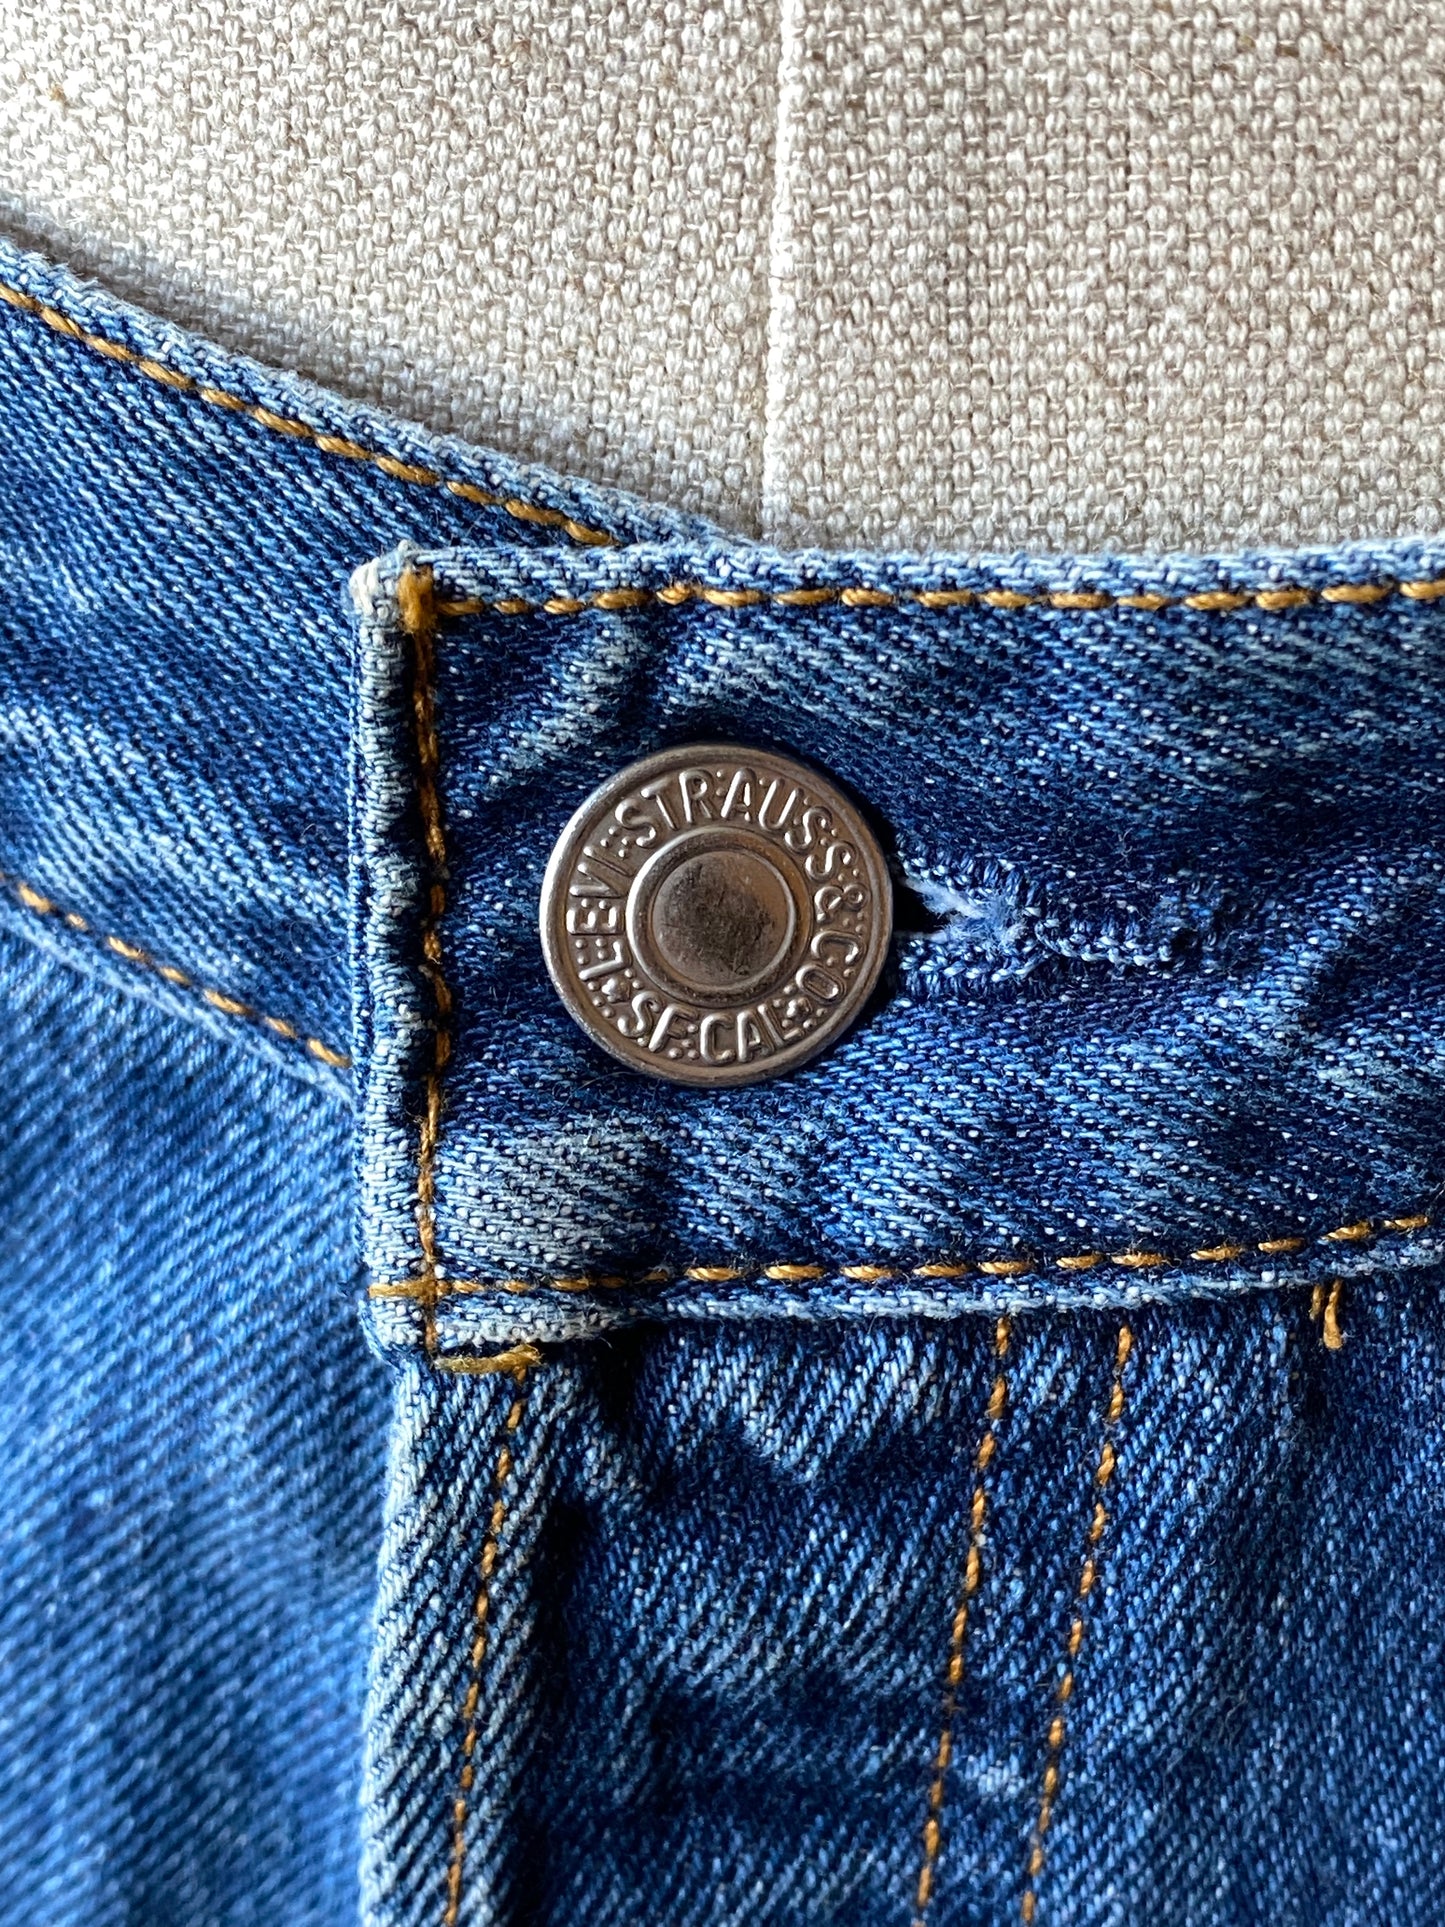 Vintage Blue 501 Levi's Jeans